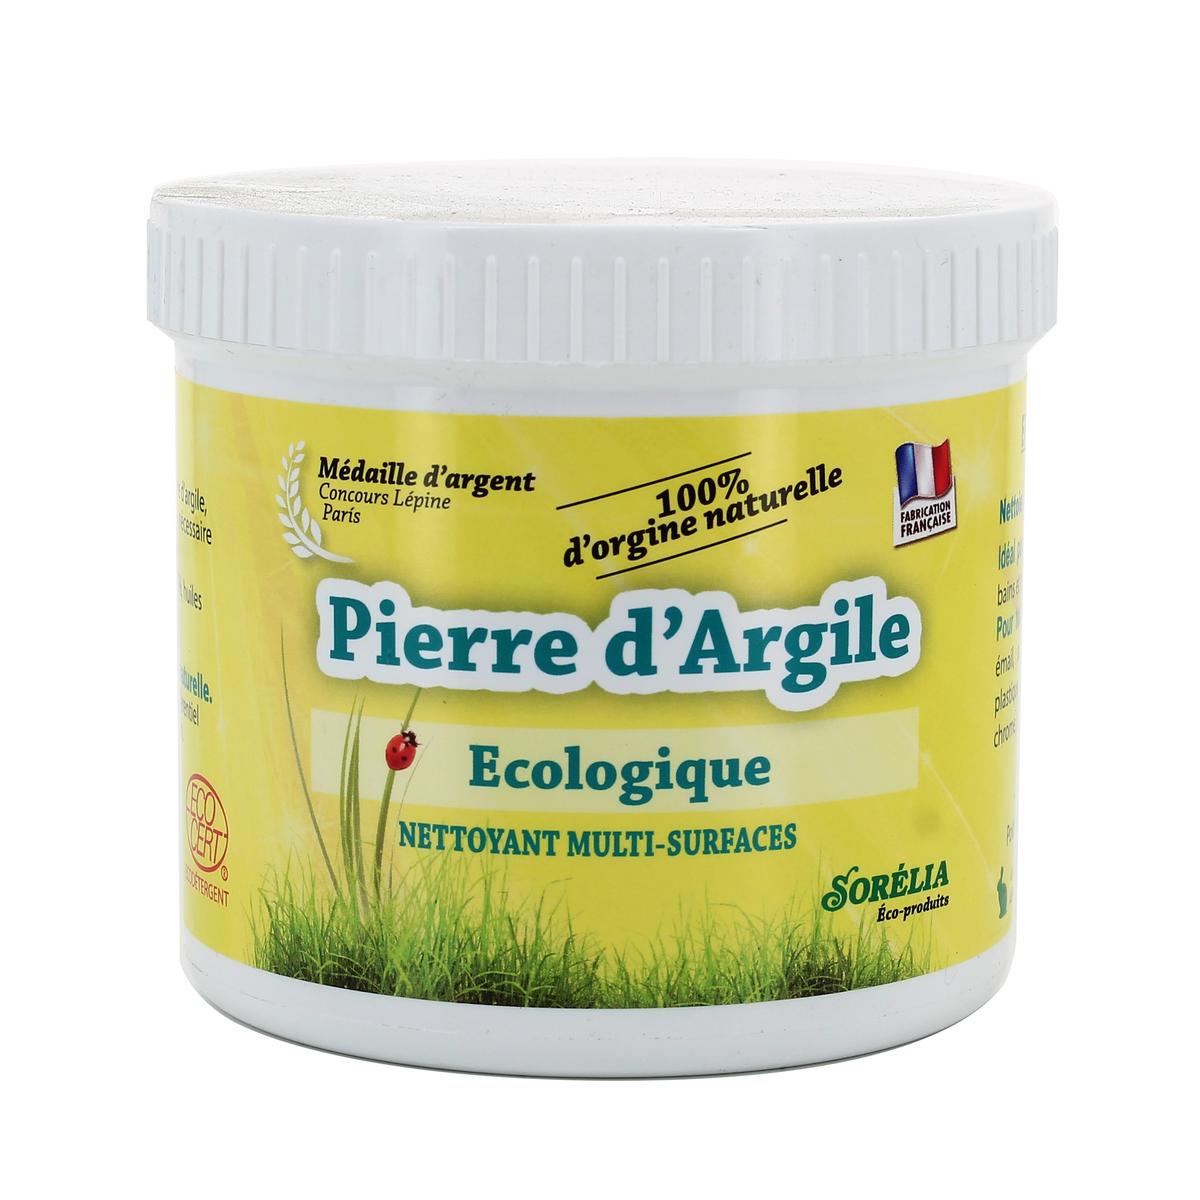 Pierre d'argile nettoyante, U Nature (400 g)  La Belle Vie : Courses en  Ligne - Livraison à Domicile